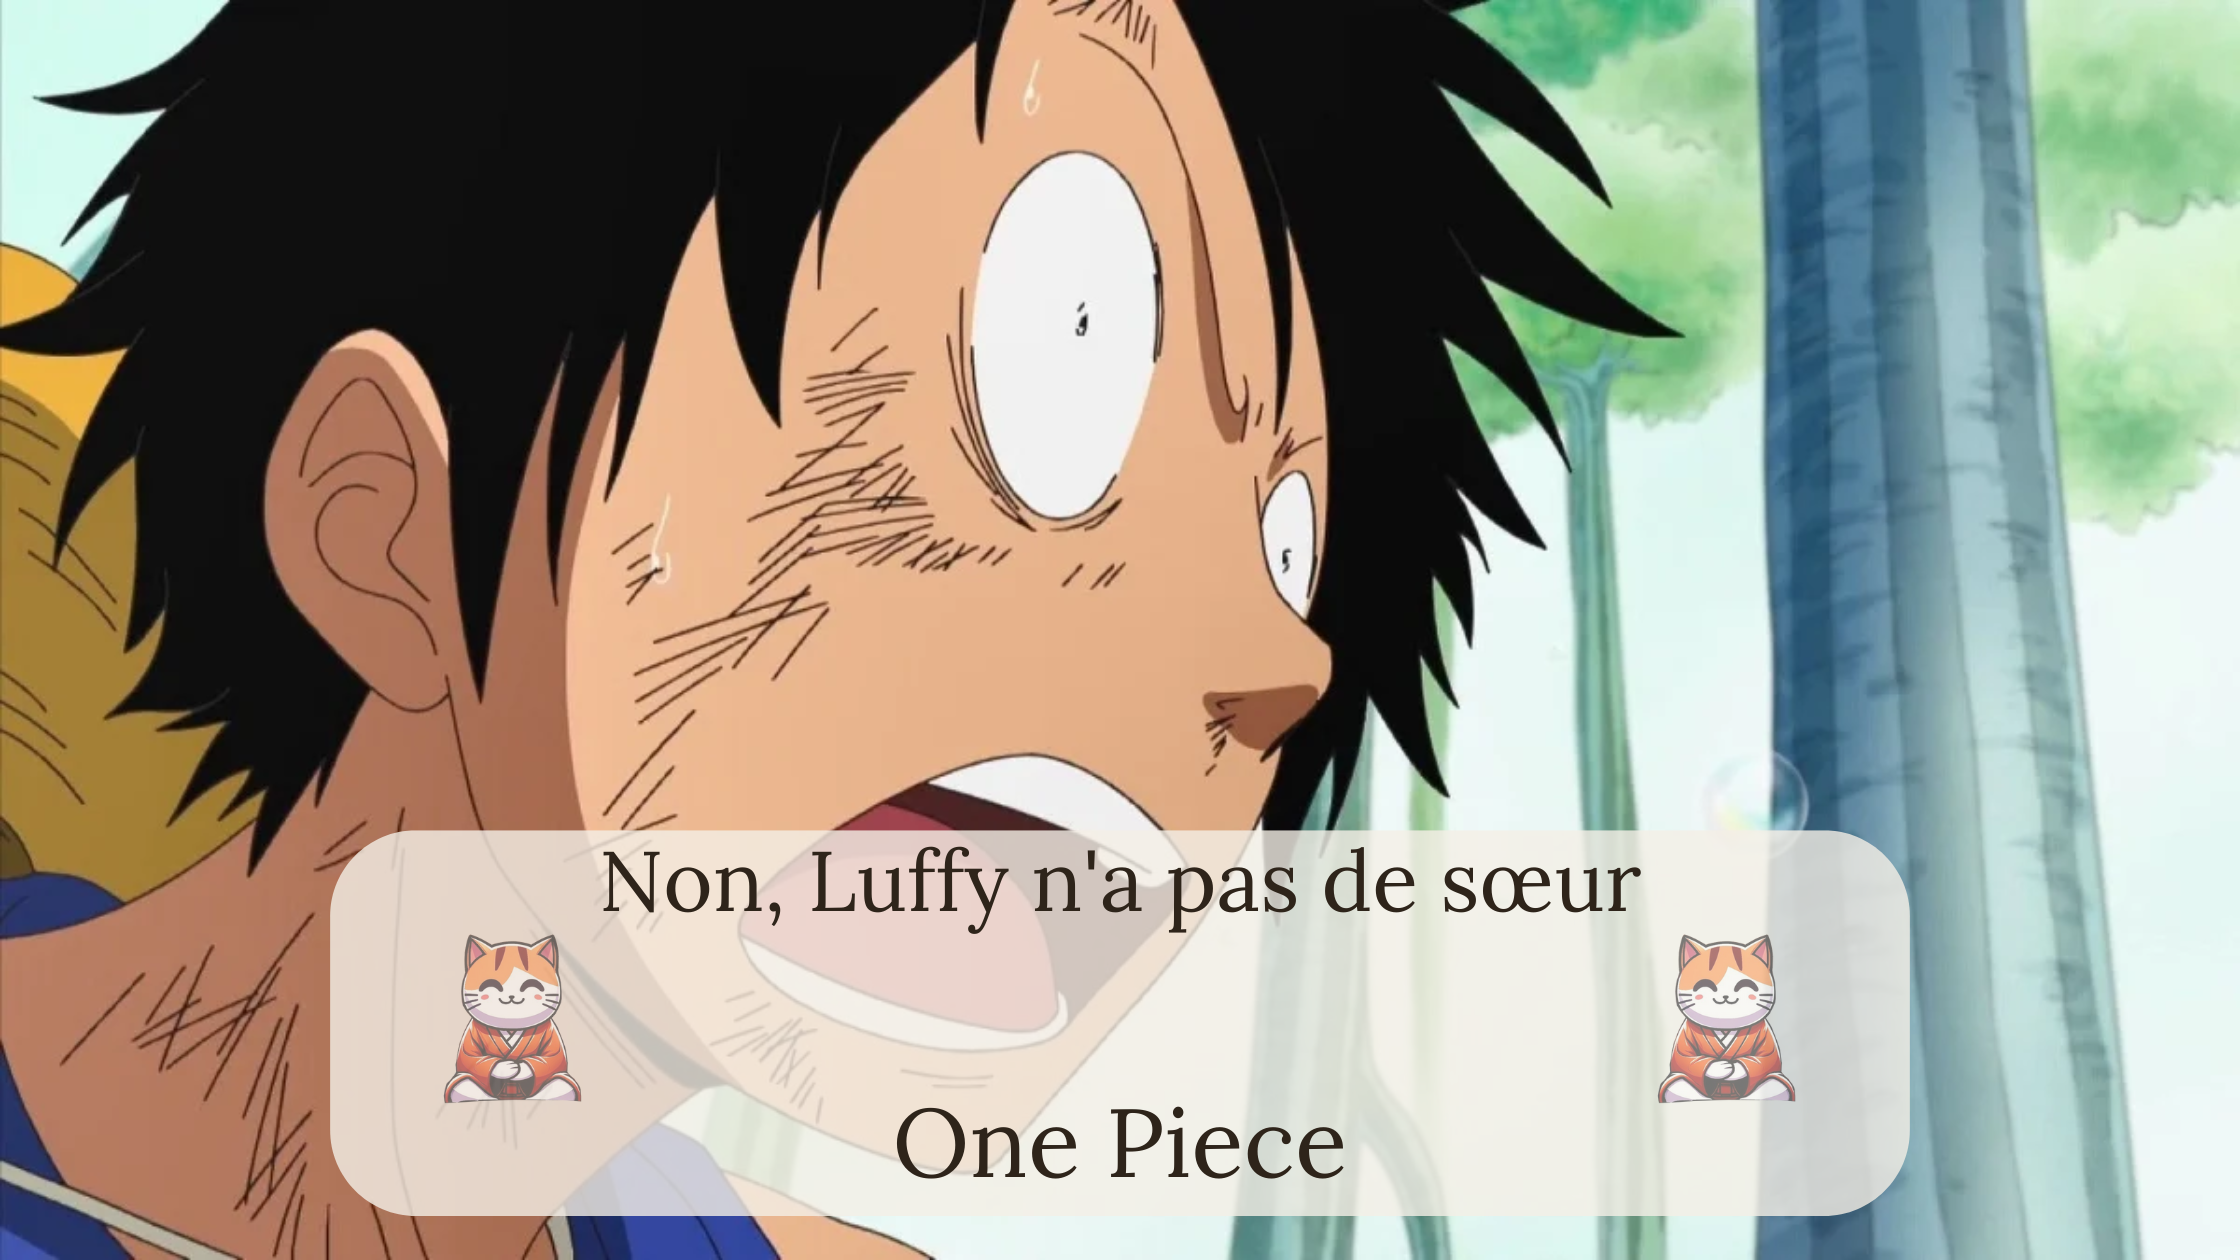 Non, Luffy n'a pas de sœur dans "One Piece"